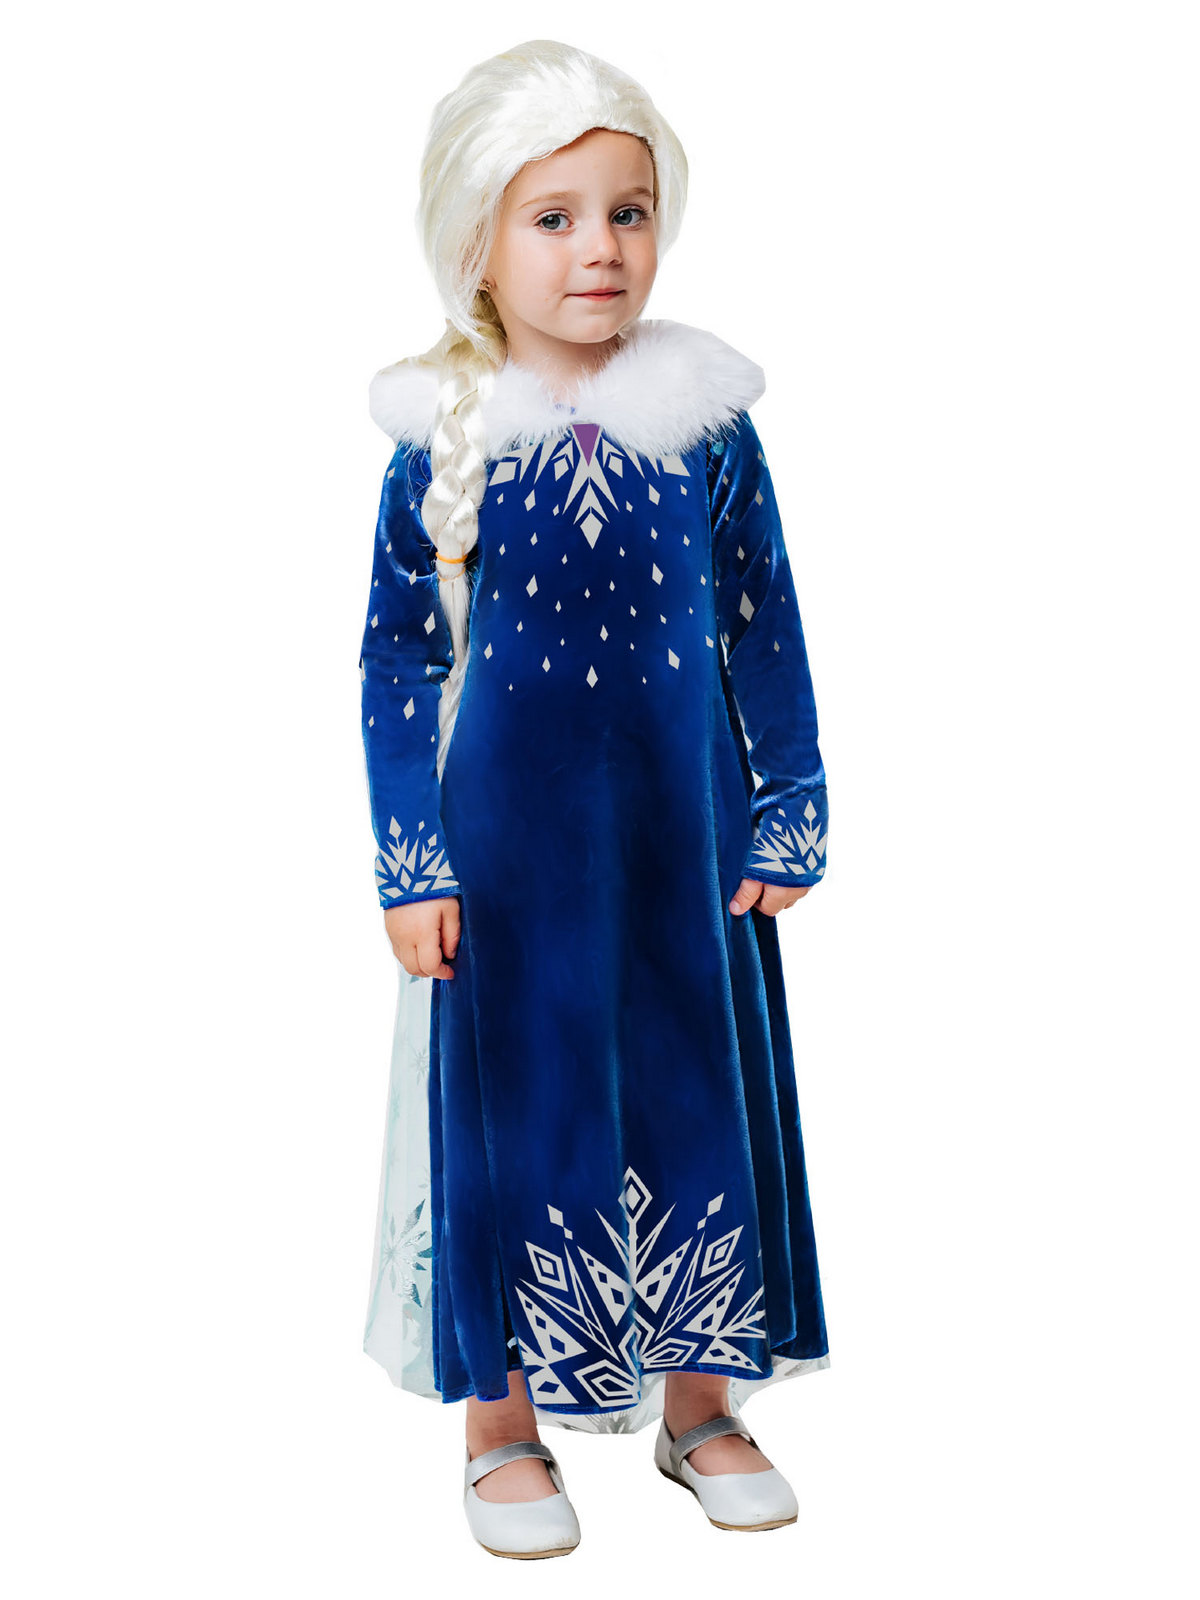 фото Карнавальный костюм batik пуговка. эльза (зимнее платье), размер 122-64, арт. 9004 к-21